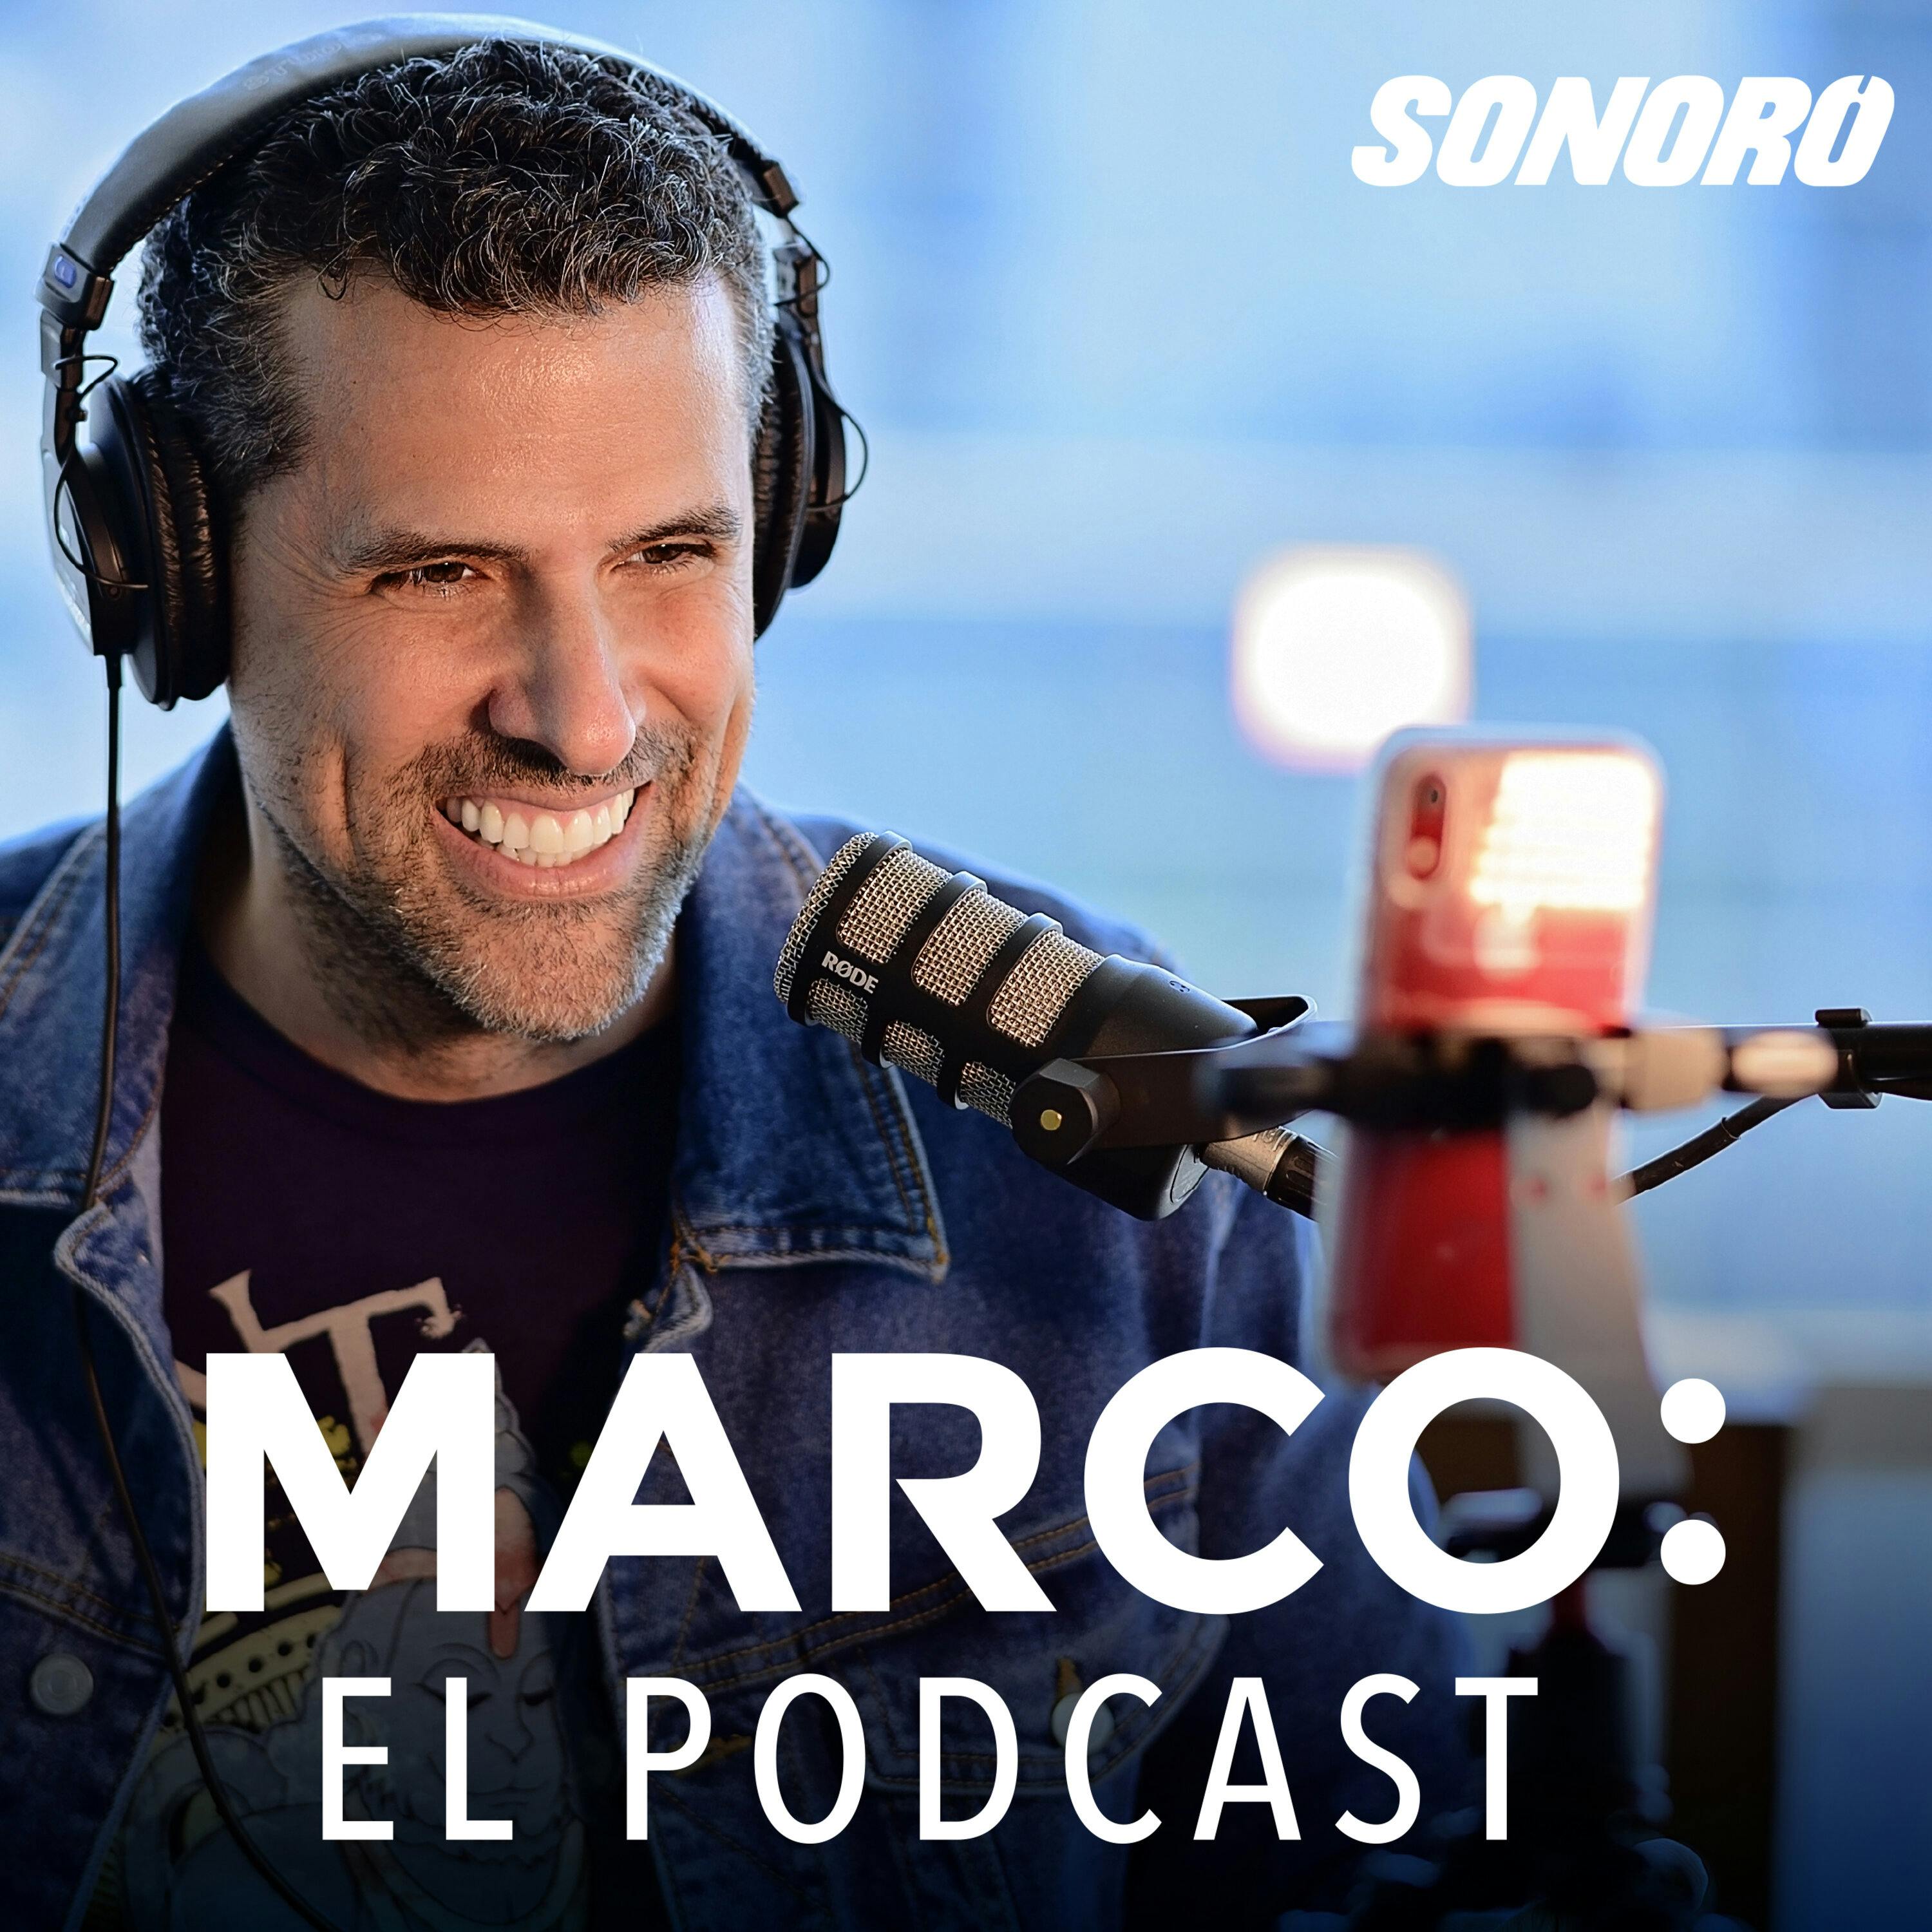 Cosas Random De Ultronixs: Cosas random por Santiago on Apple Podcasts